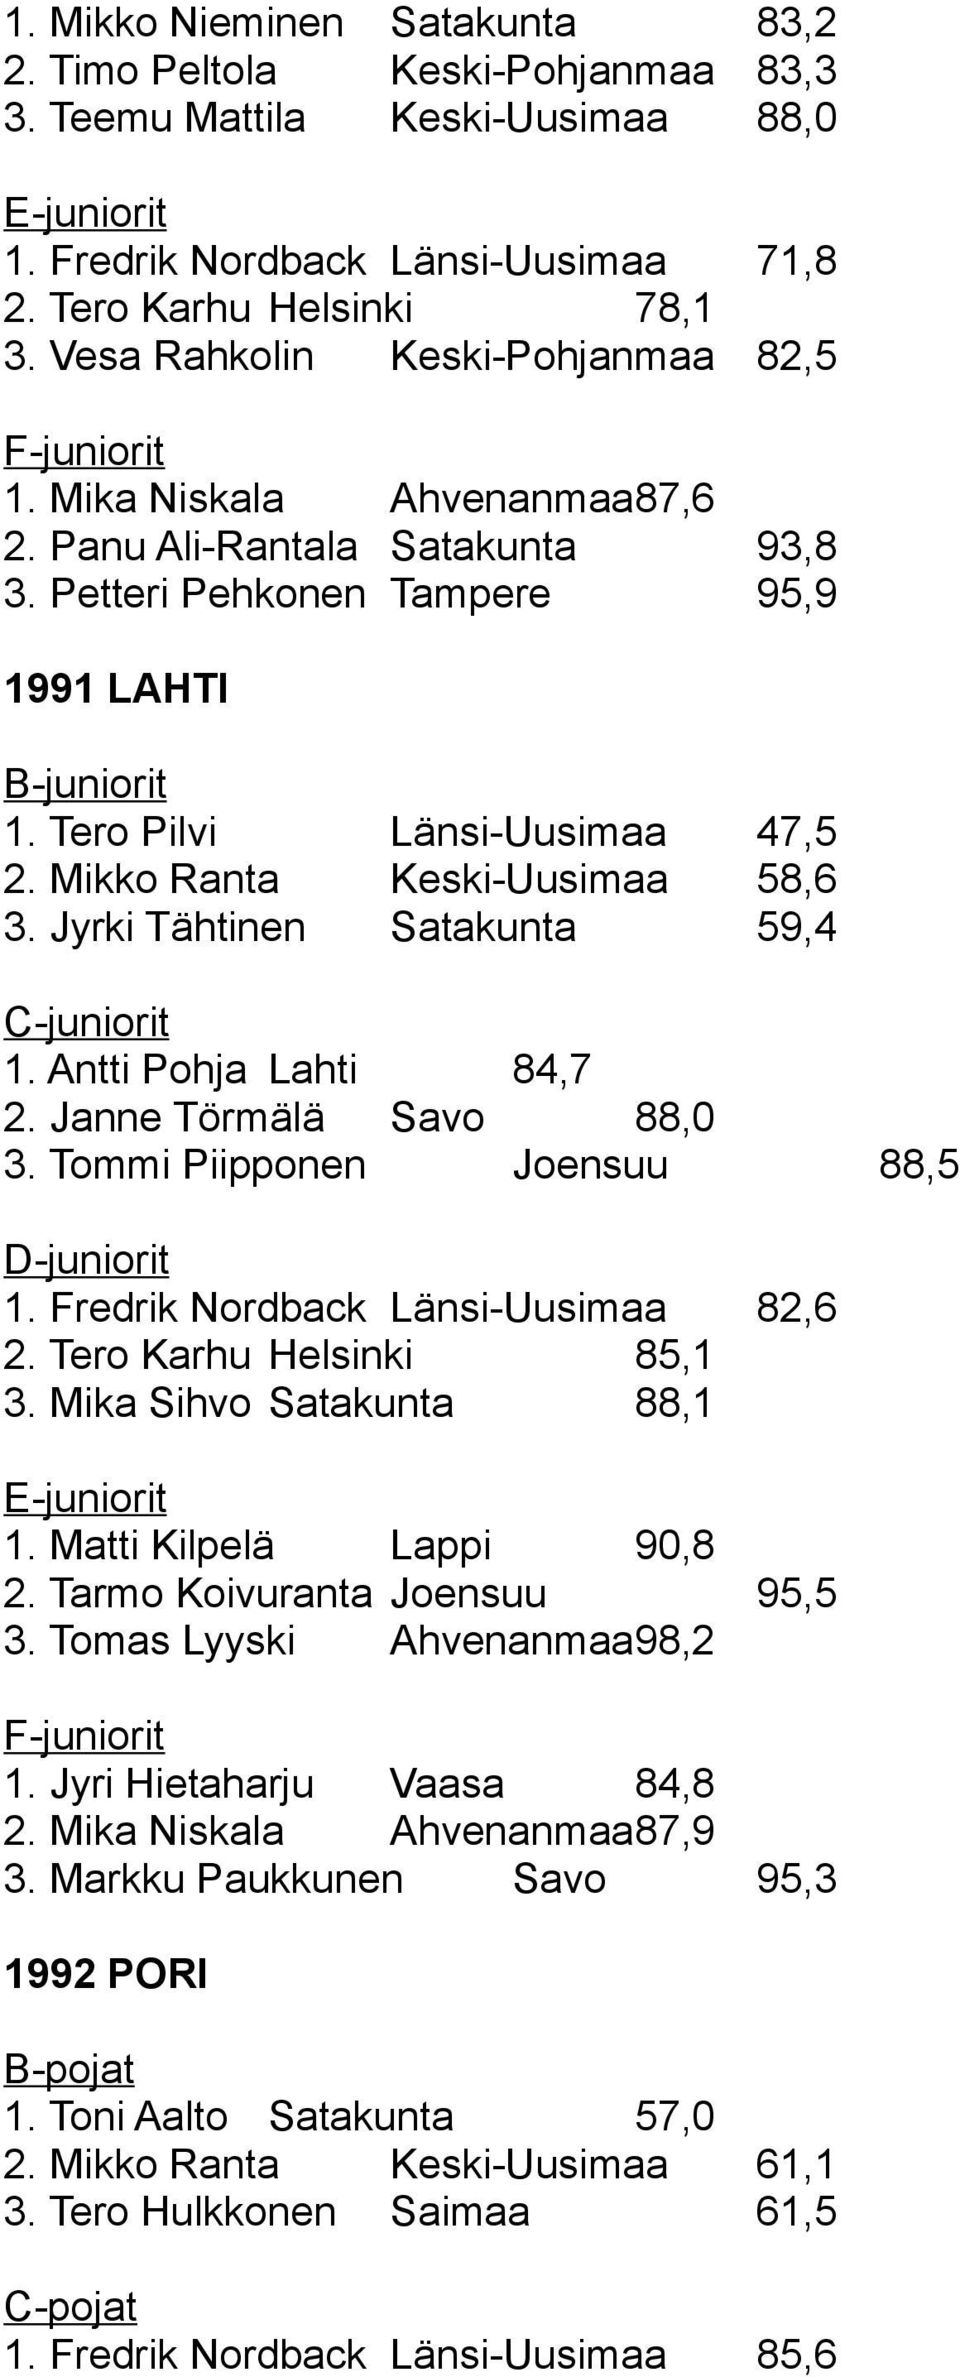 Mikko Ranta Keski-Uusimaa 58,6 3. Jyrki Tähtinen Satakunta 59,4 1. Antti Pohja Lahti 84,7 2. Janne Törmälä Savo 88,0 3. Tommi Piipponen Joensuu 88,5 1. Fredrik Nordback Länsi-Uusimaa 82,6 2.